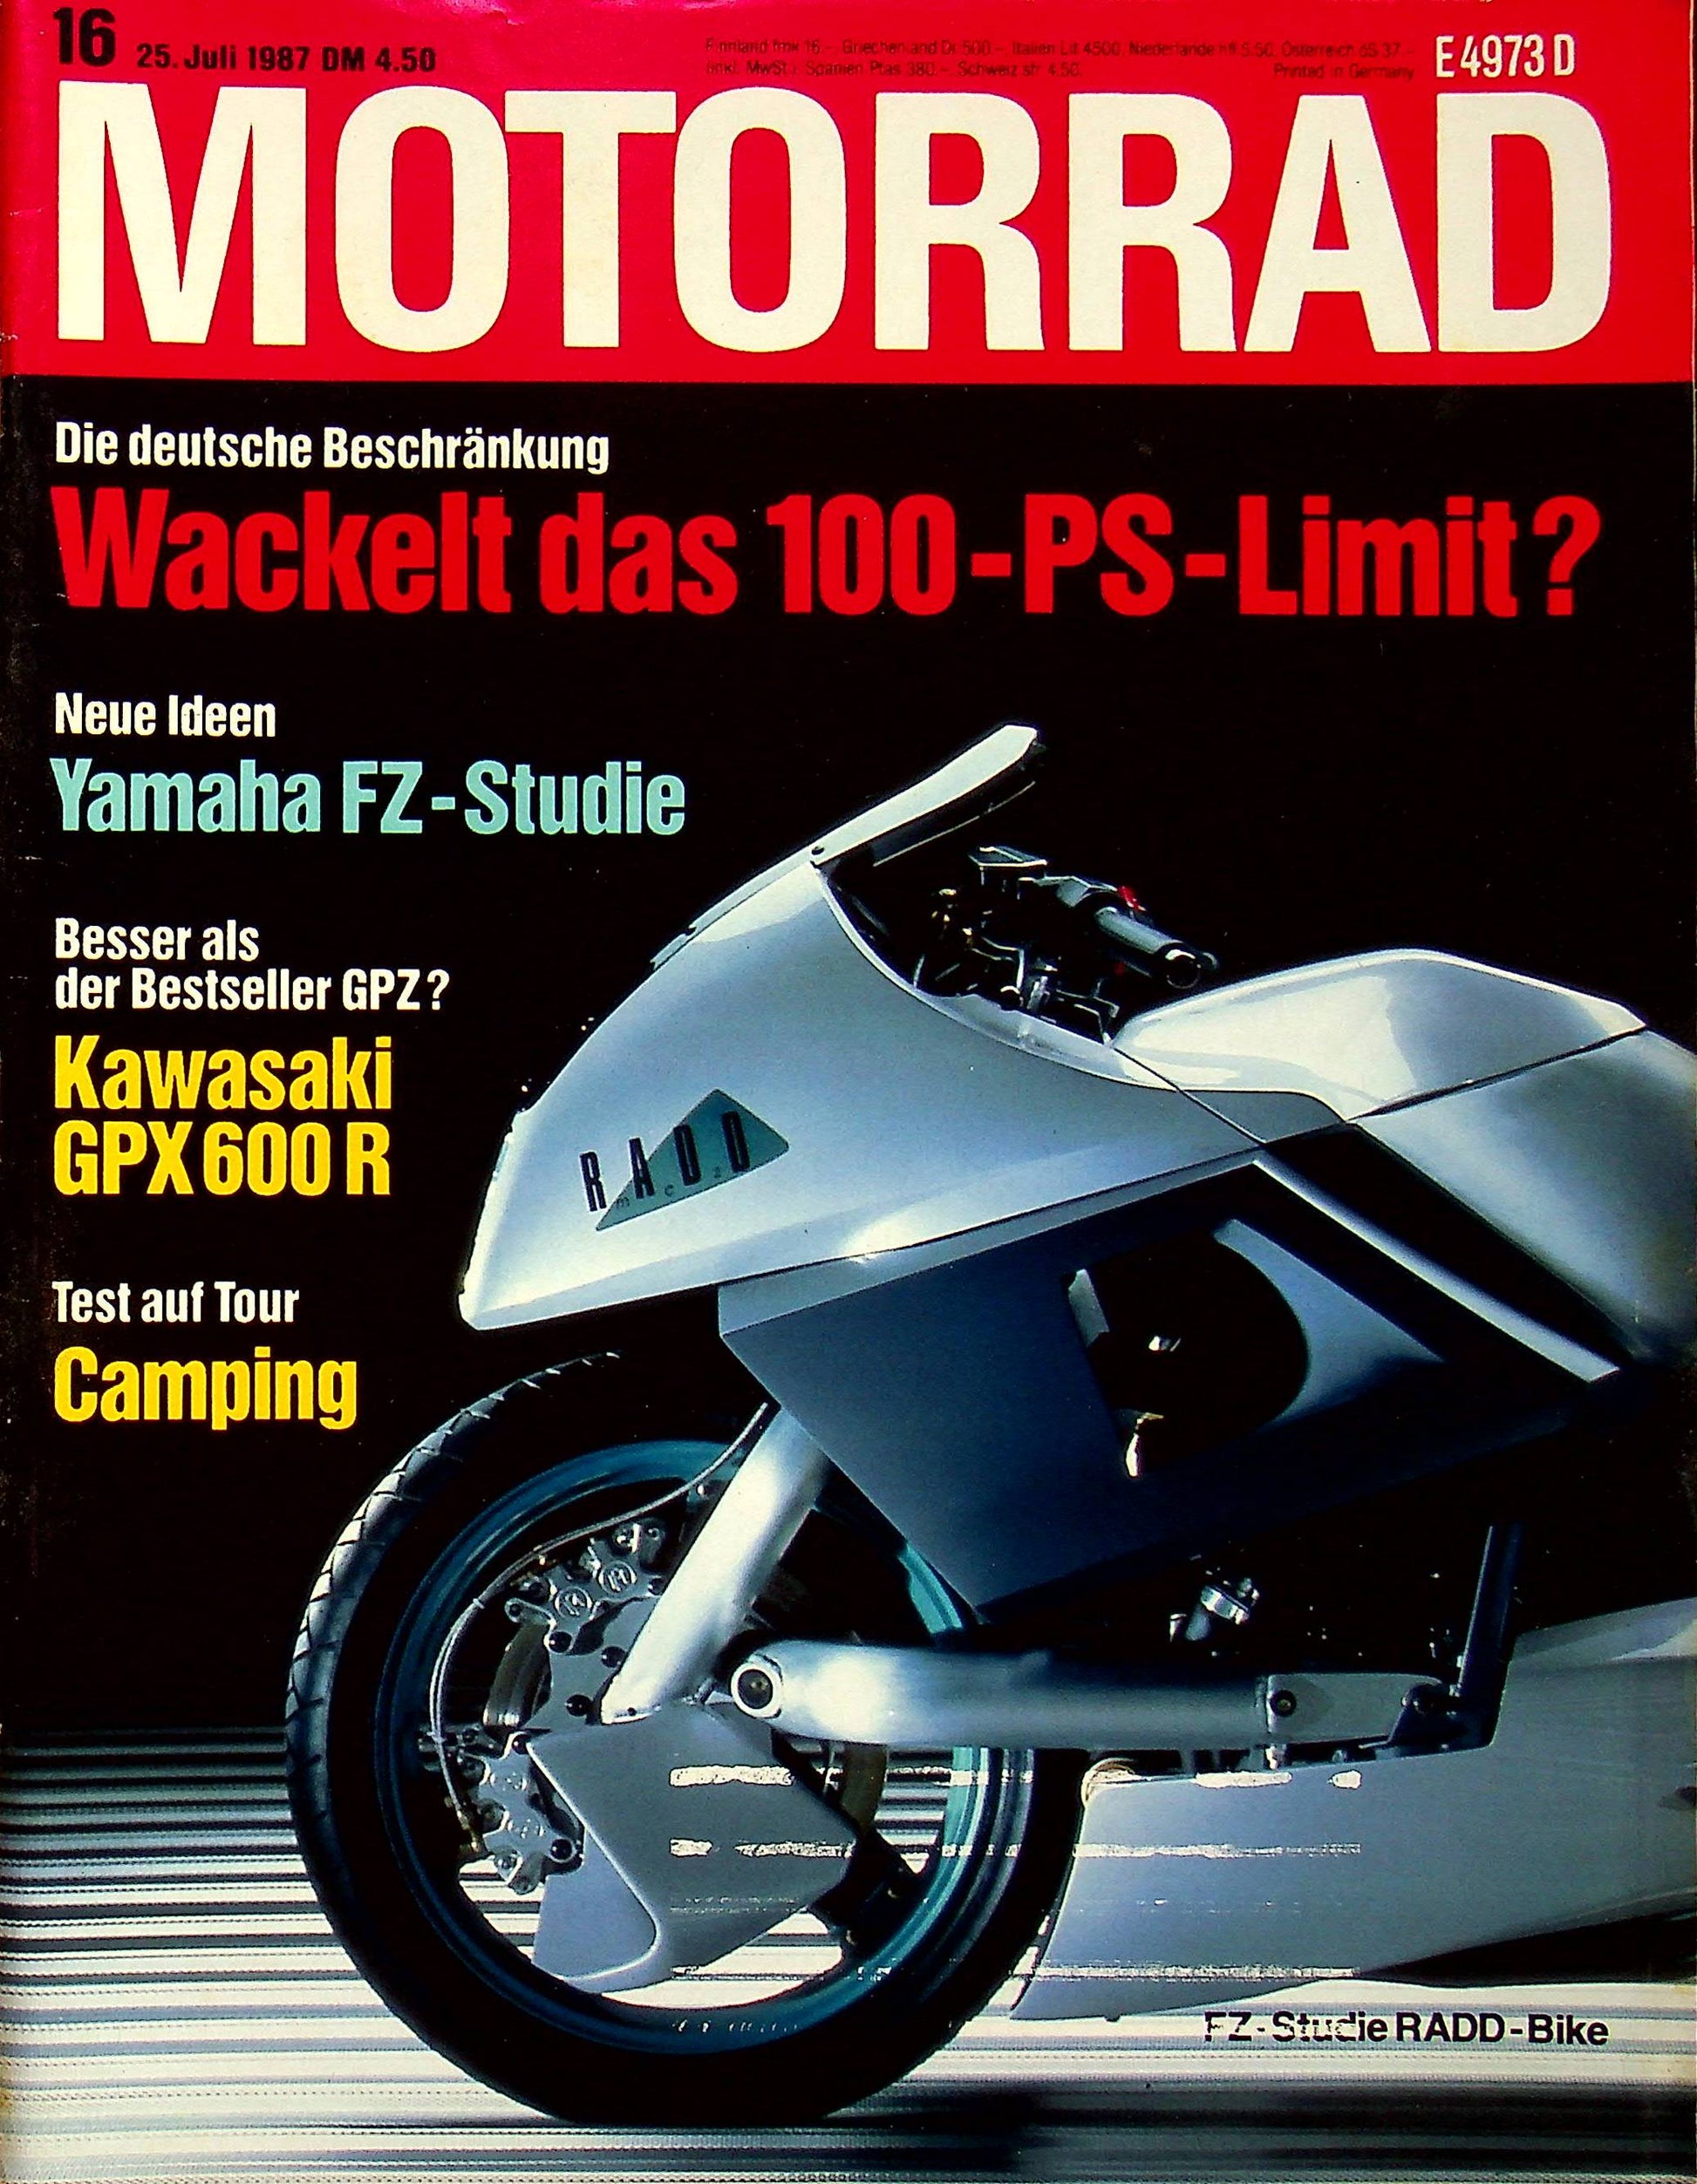 Motorrad 16/1987